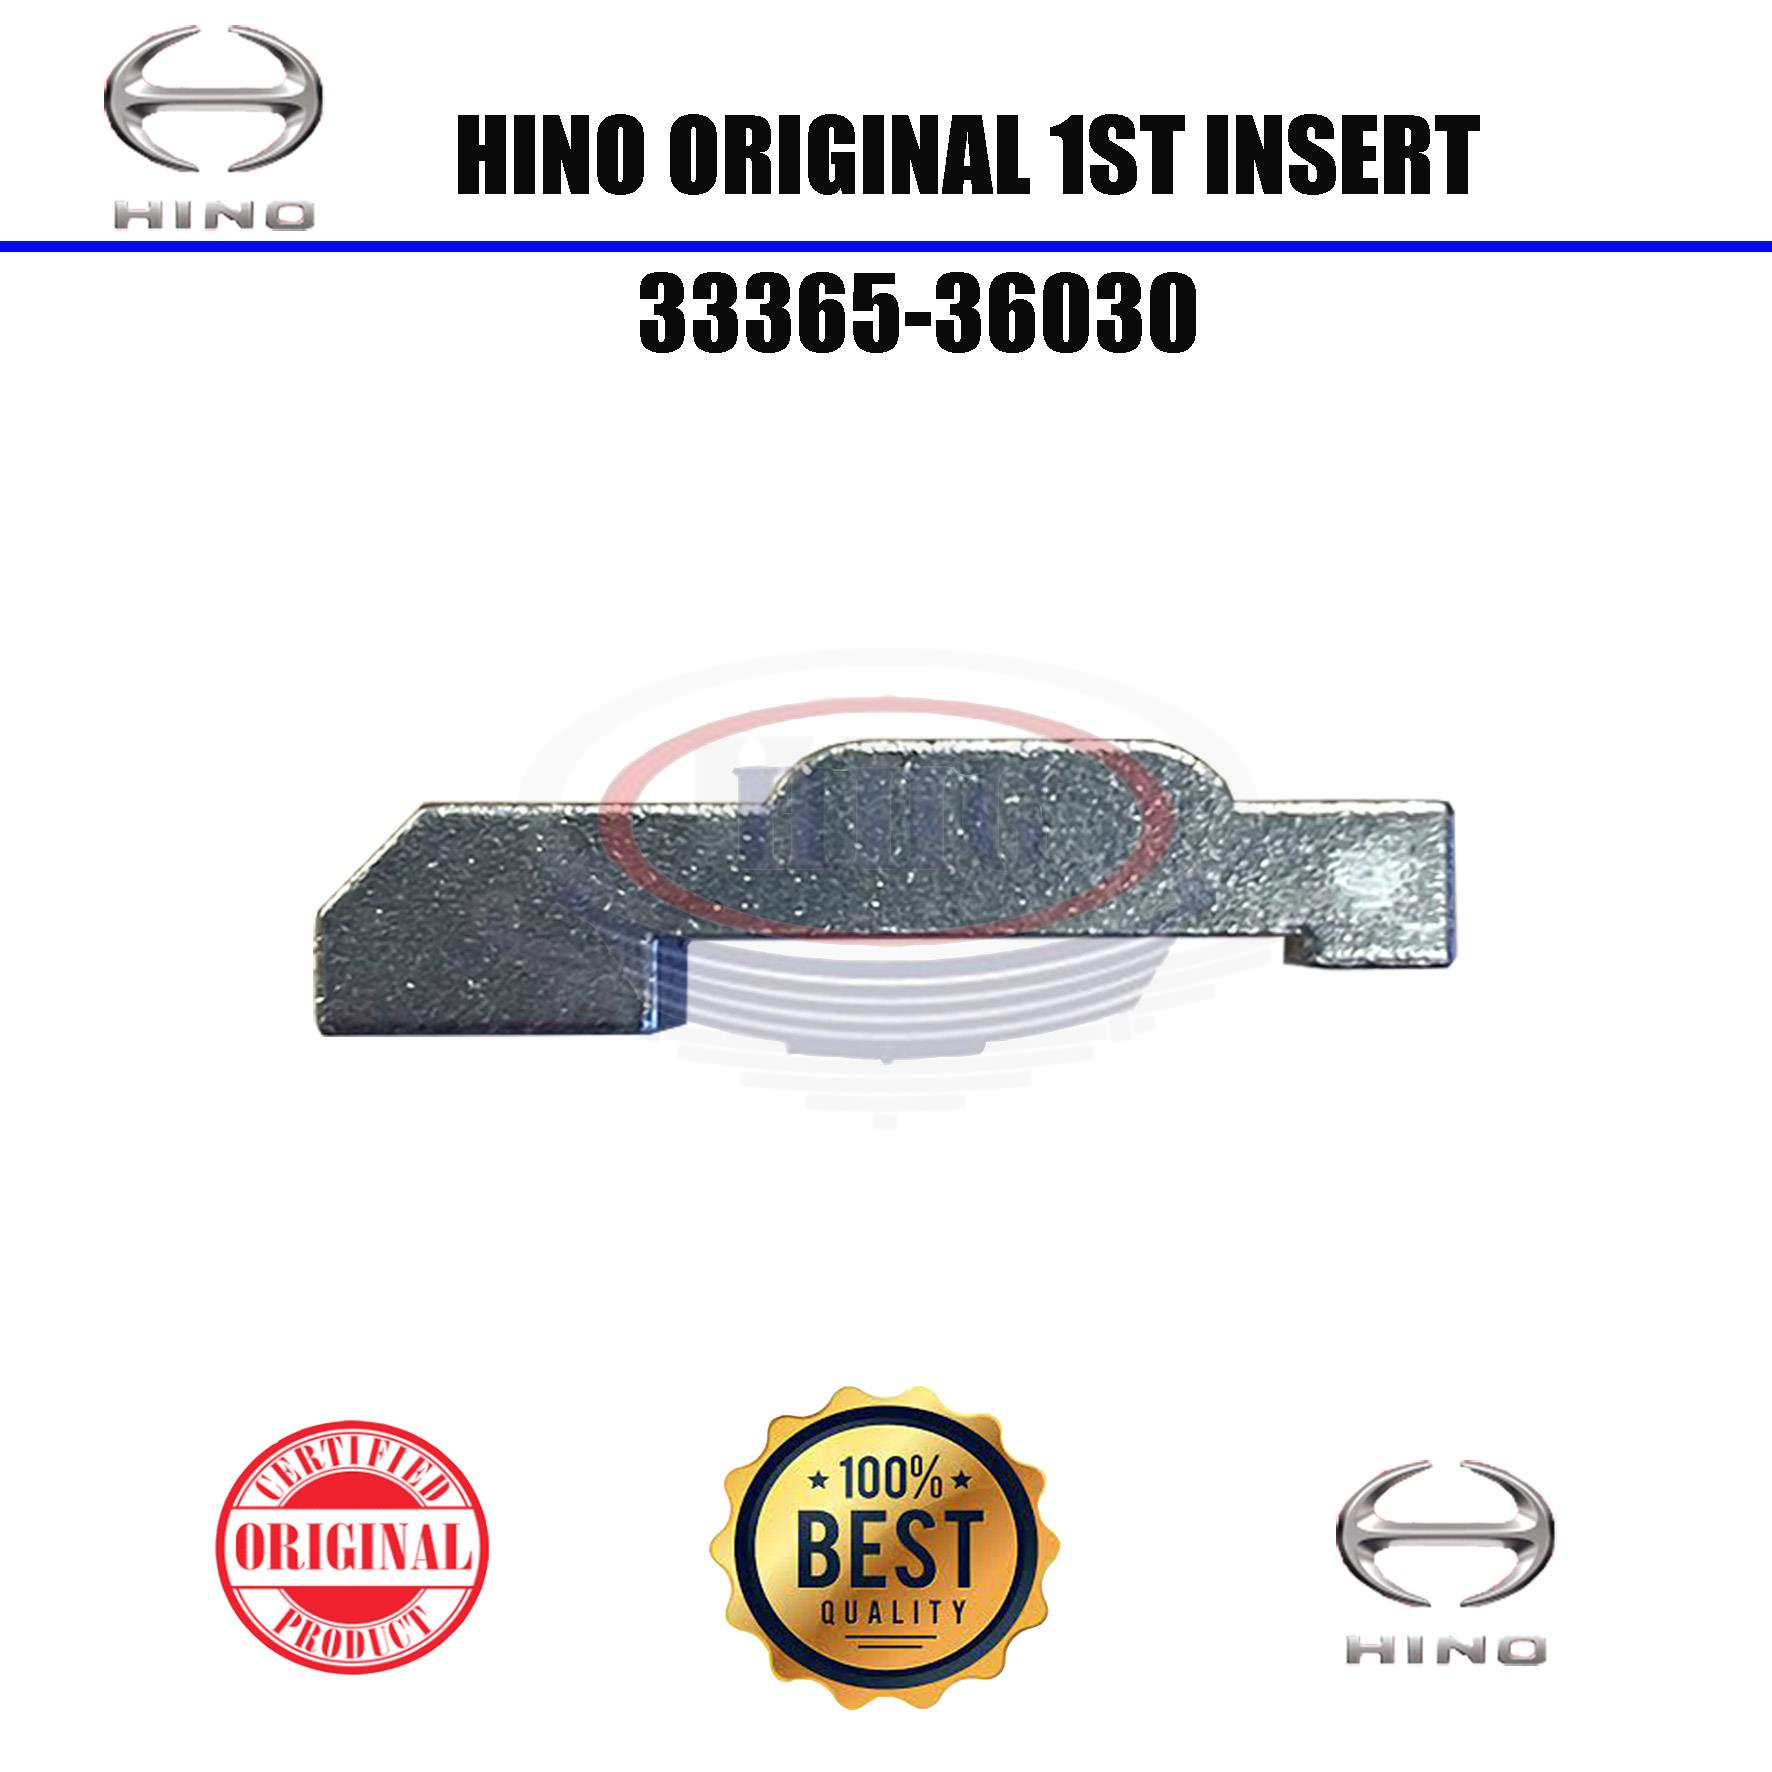 Hino Original Dutro WU410 1st Insert (33365-36030)